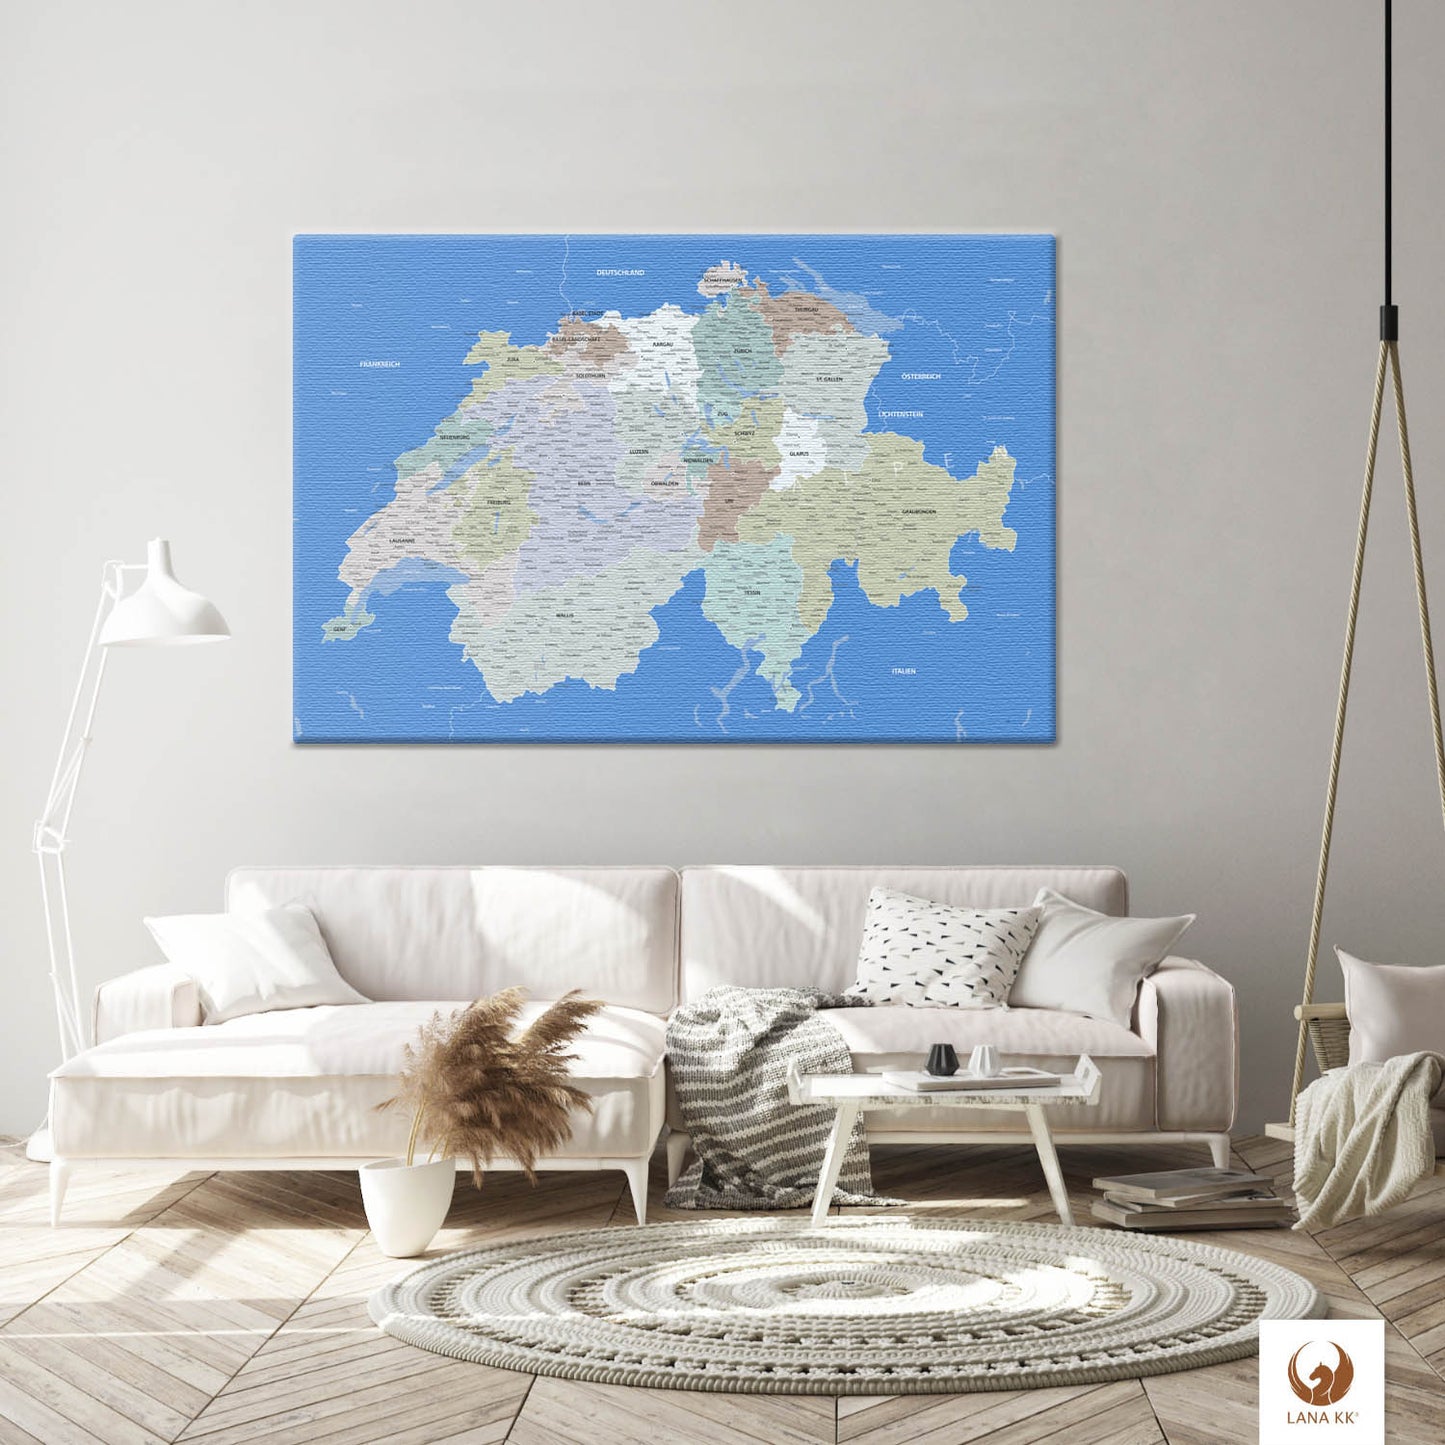 Die Welt als Zentrum Deiner Wohnung. Deine Schweizkarte Hellblau für sich mit ihren ausgewogenen Farben ideal in Dein Wohnkonzept ein.